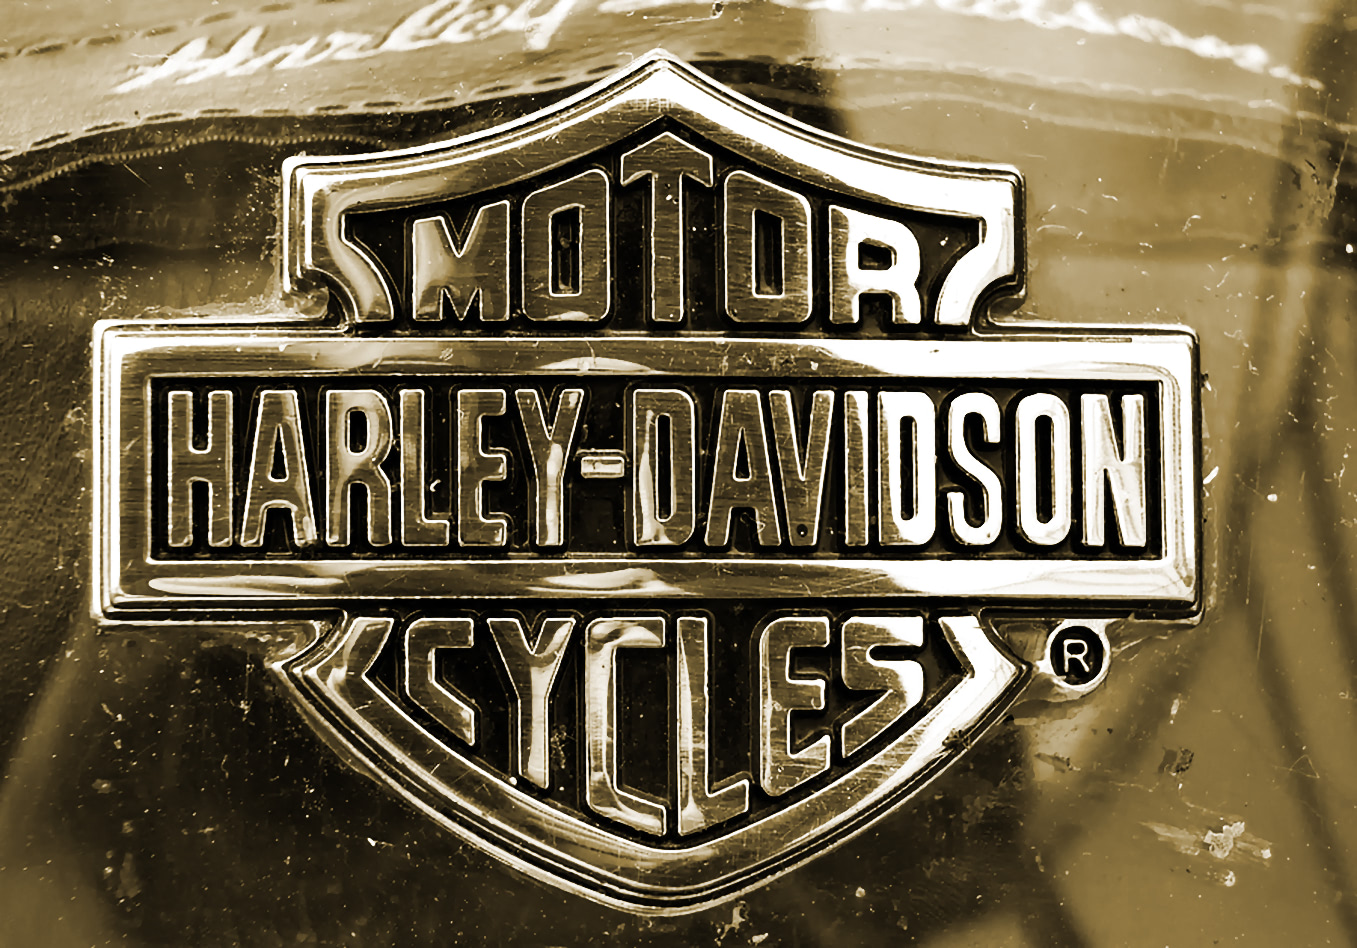 Harley-Davidson emblem